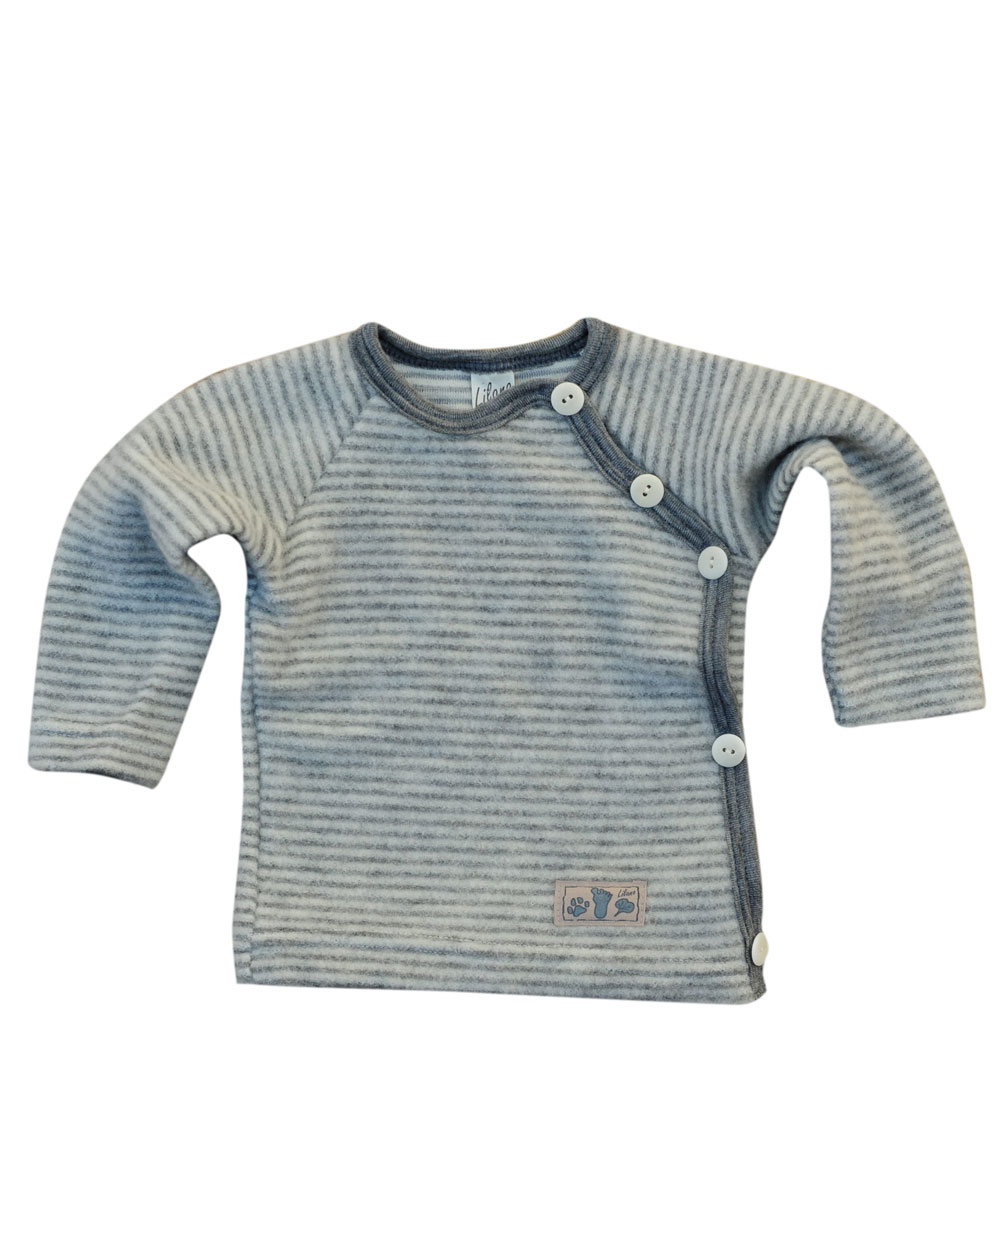 Lilano Baby Shirt 100 in (kbT) Wollfrottee Ringelmuster % Foster-Naturkleidung lustigem 